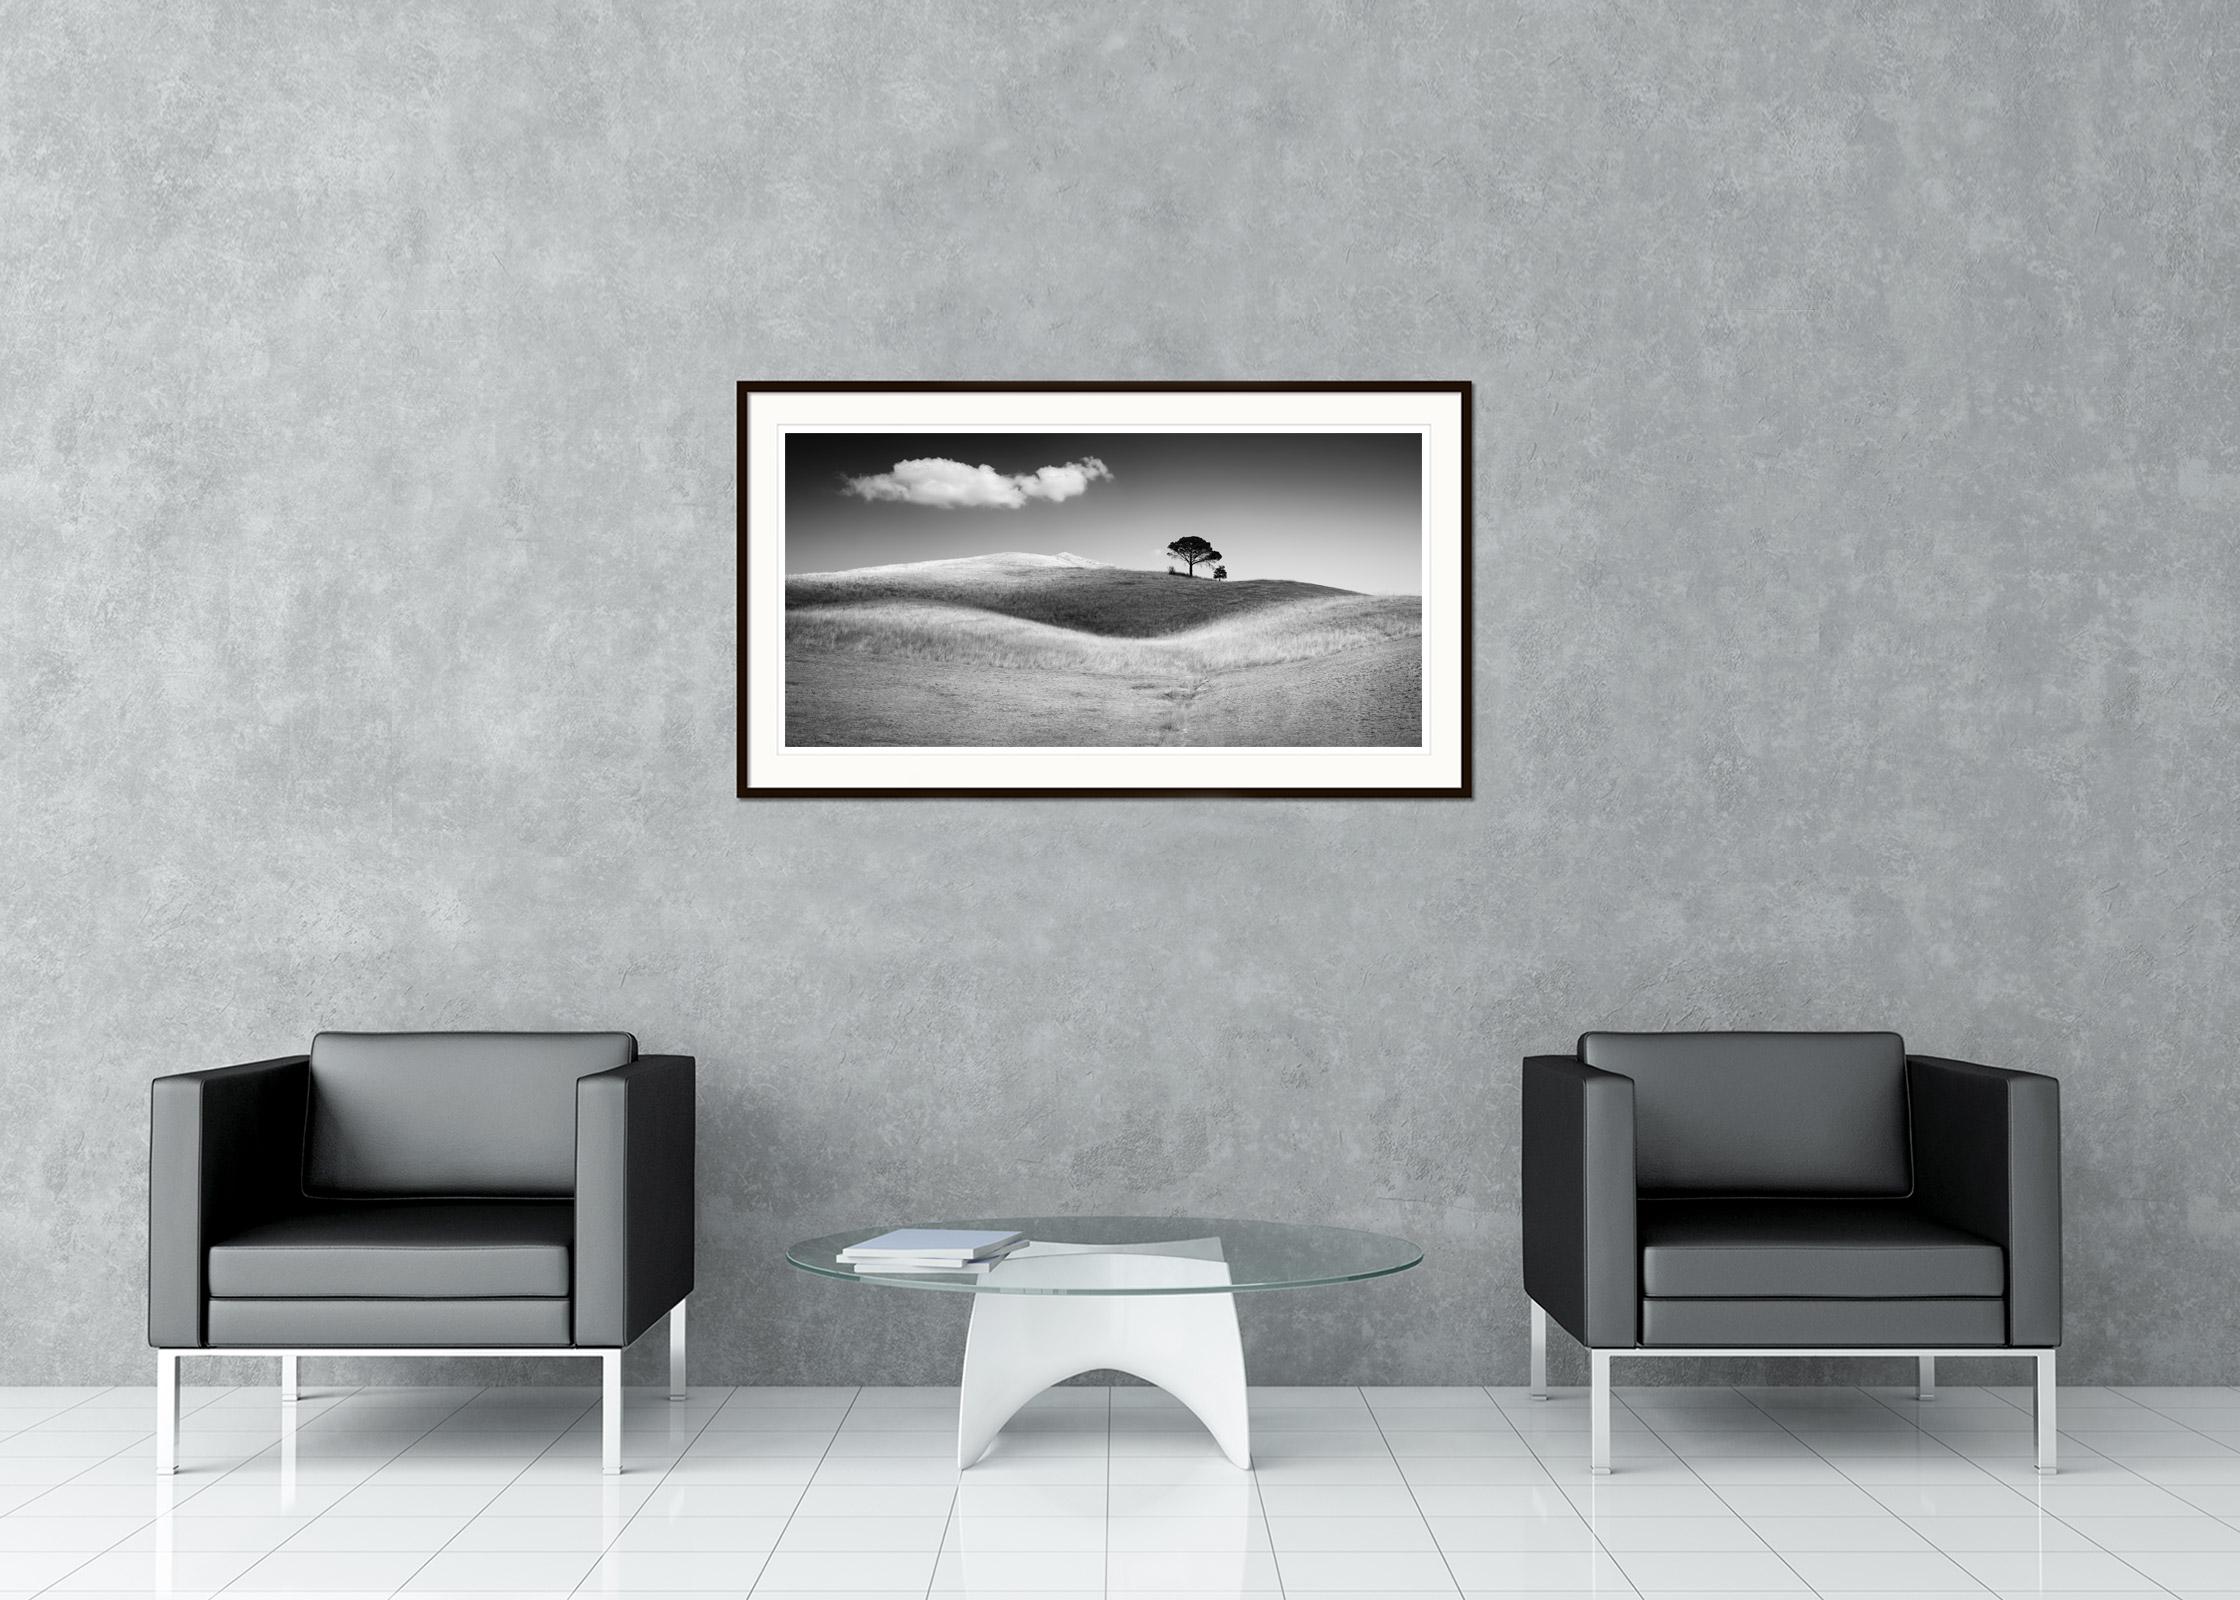 Schwarz-Weiß-Fotografie von Landschaften. Italienische Zirbelkiefer auf einem Hügel mit einer großen Wolke und Schatten über dem Feld, Toskana. Pigmenttintendruck, Auflage 7, signiert, betitelt, datiert und nummeriert vom Künstler. Mit